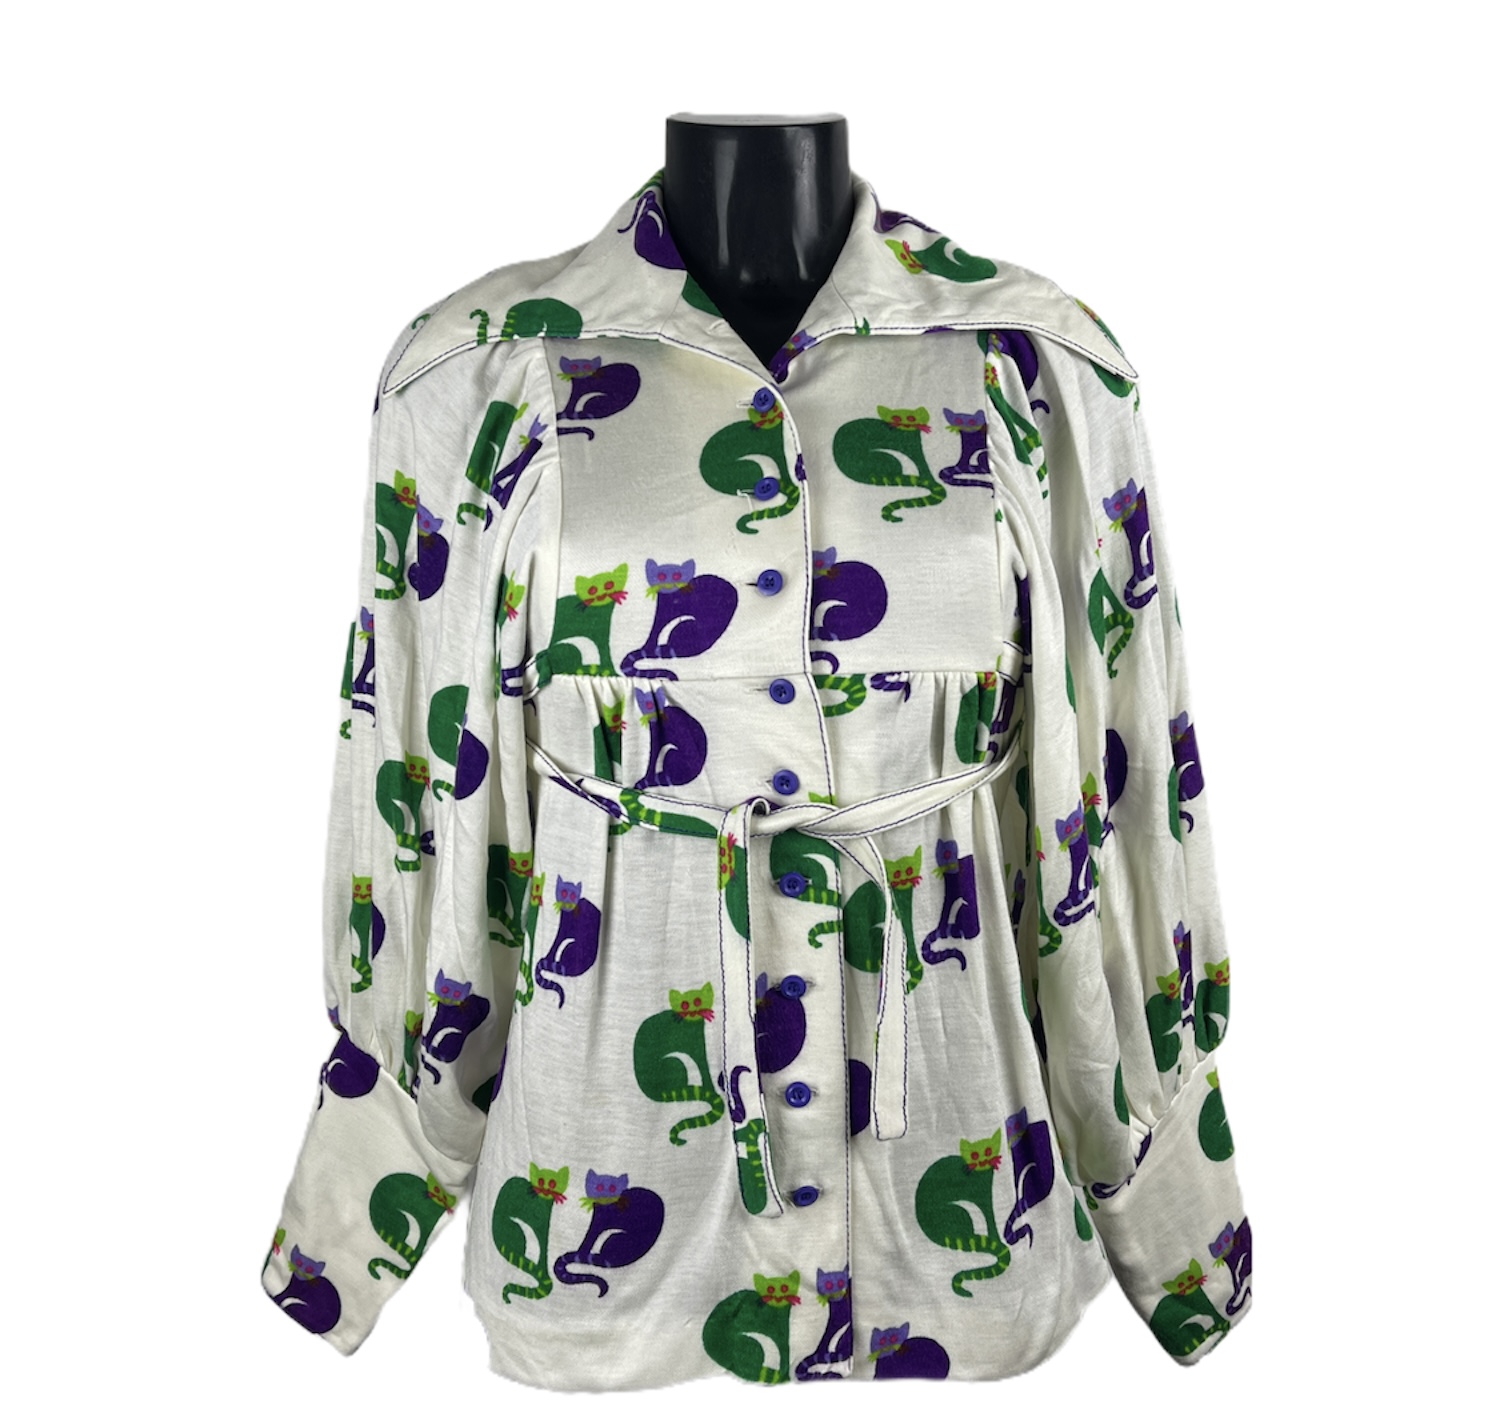 Giacca vintage estiva da donna bianca con stampa gattini verdi e viola con stringa e bottoni